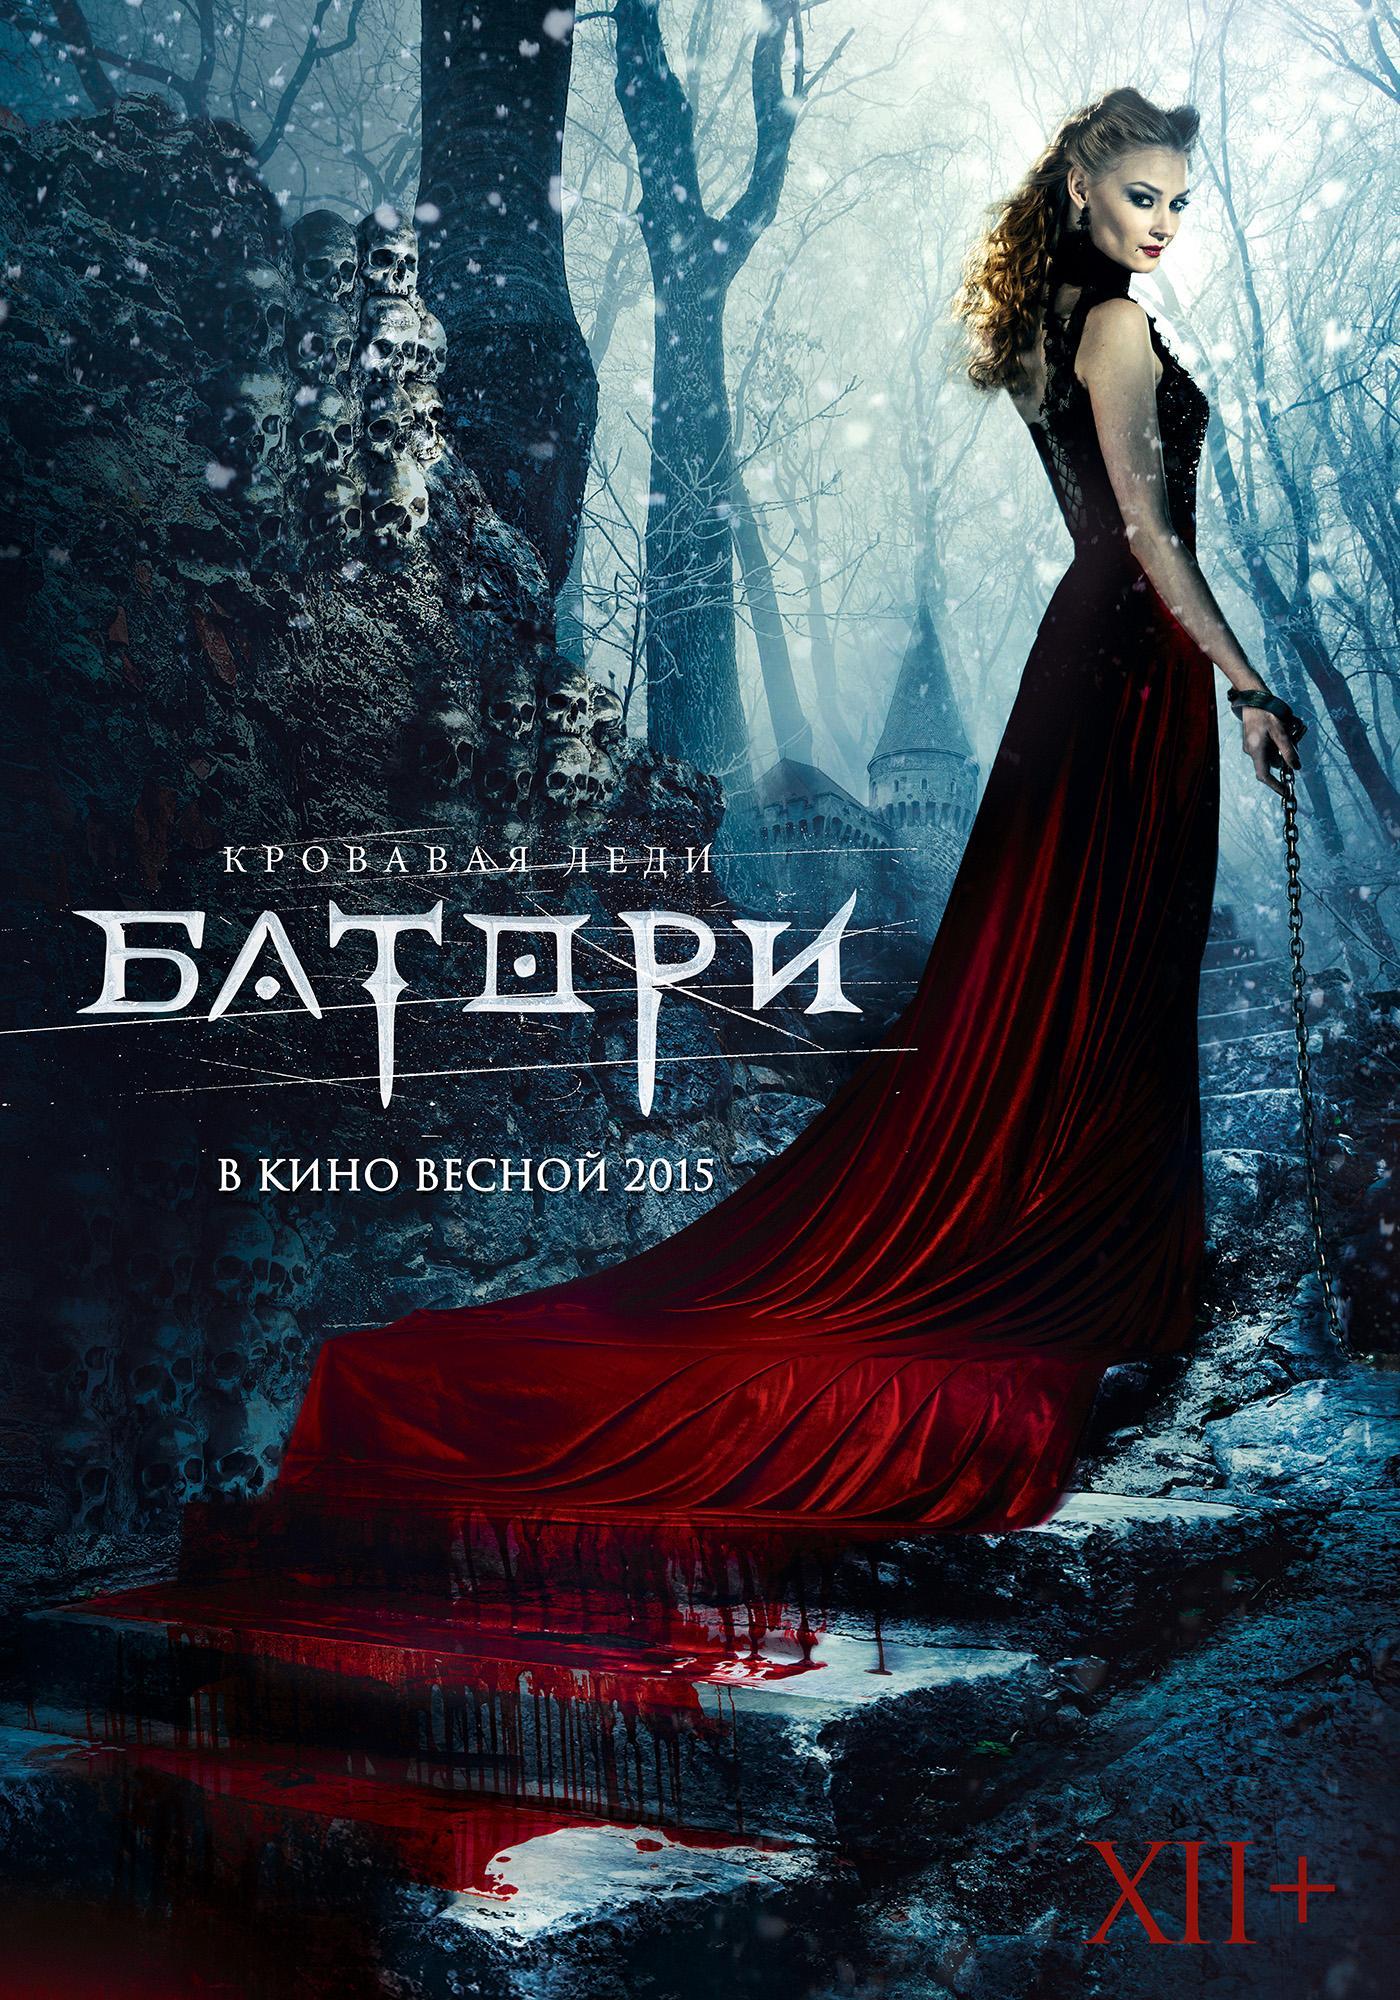 Постер фильма Кровавая леди Батори | Lady of Csejte